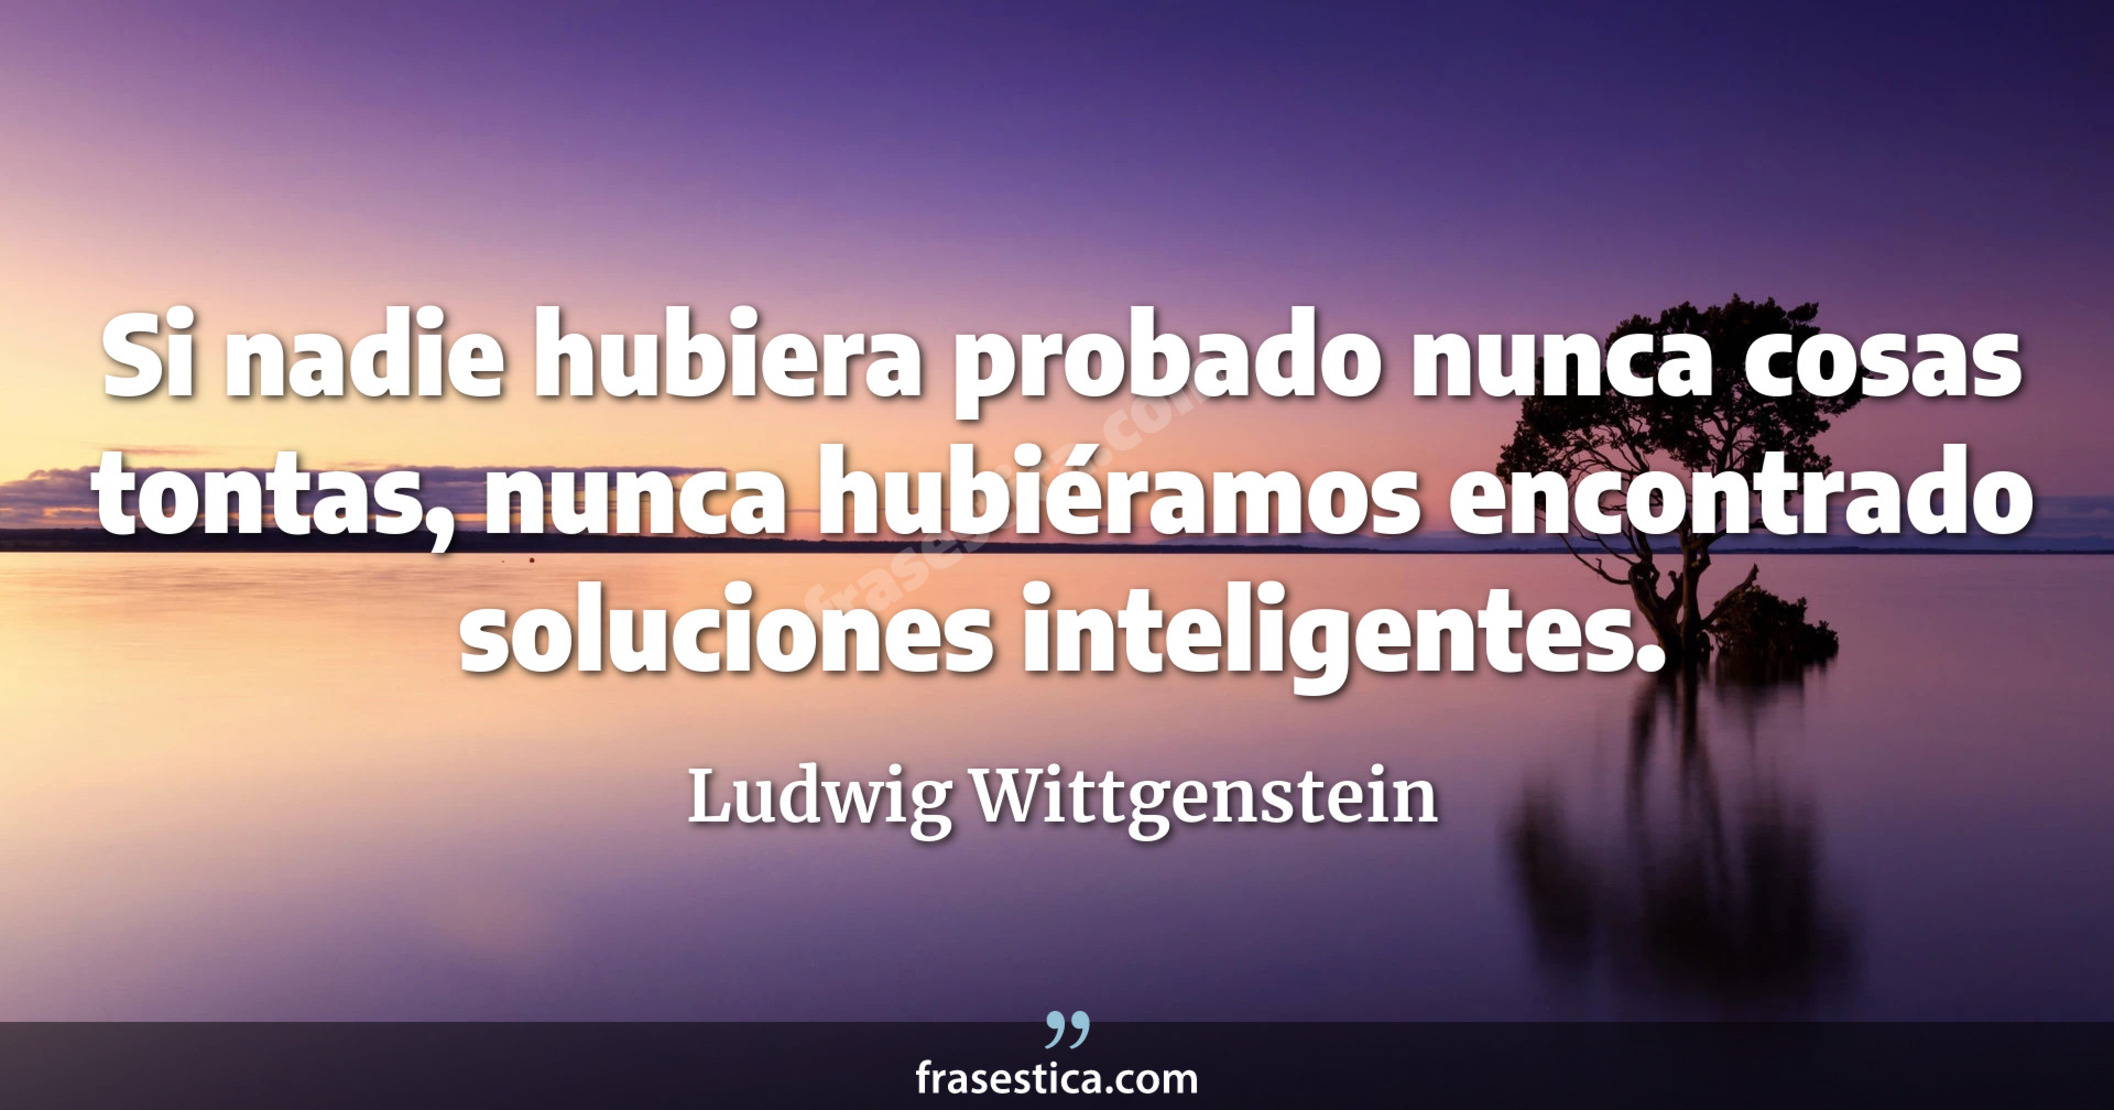 Si nadie hubiera probado nunca cosas tontas, nunca hubiéramos encontrado soluciones inteligentes. - Ludwig Wittgenstein